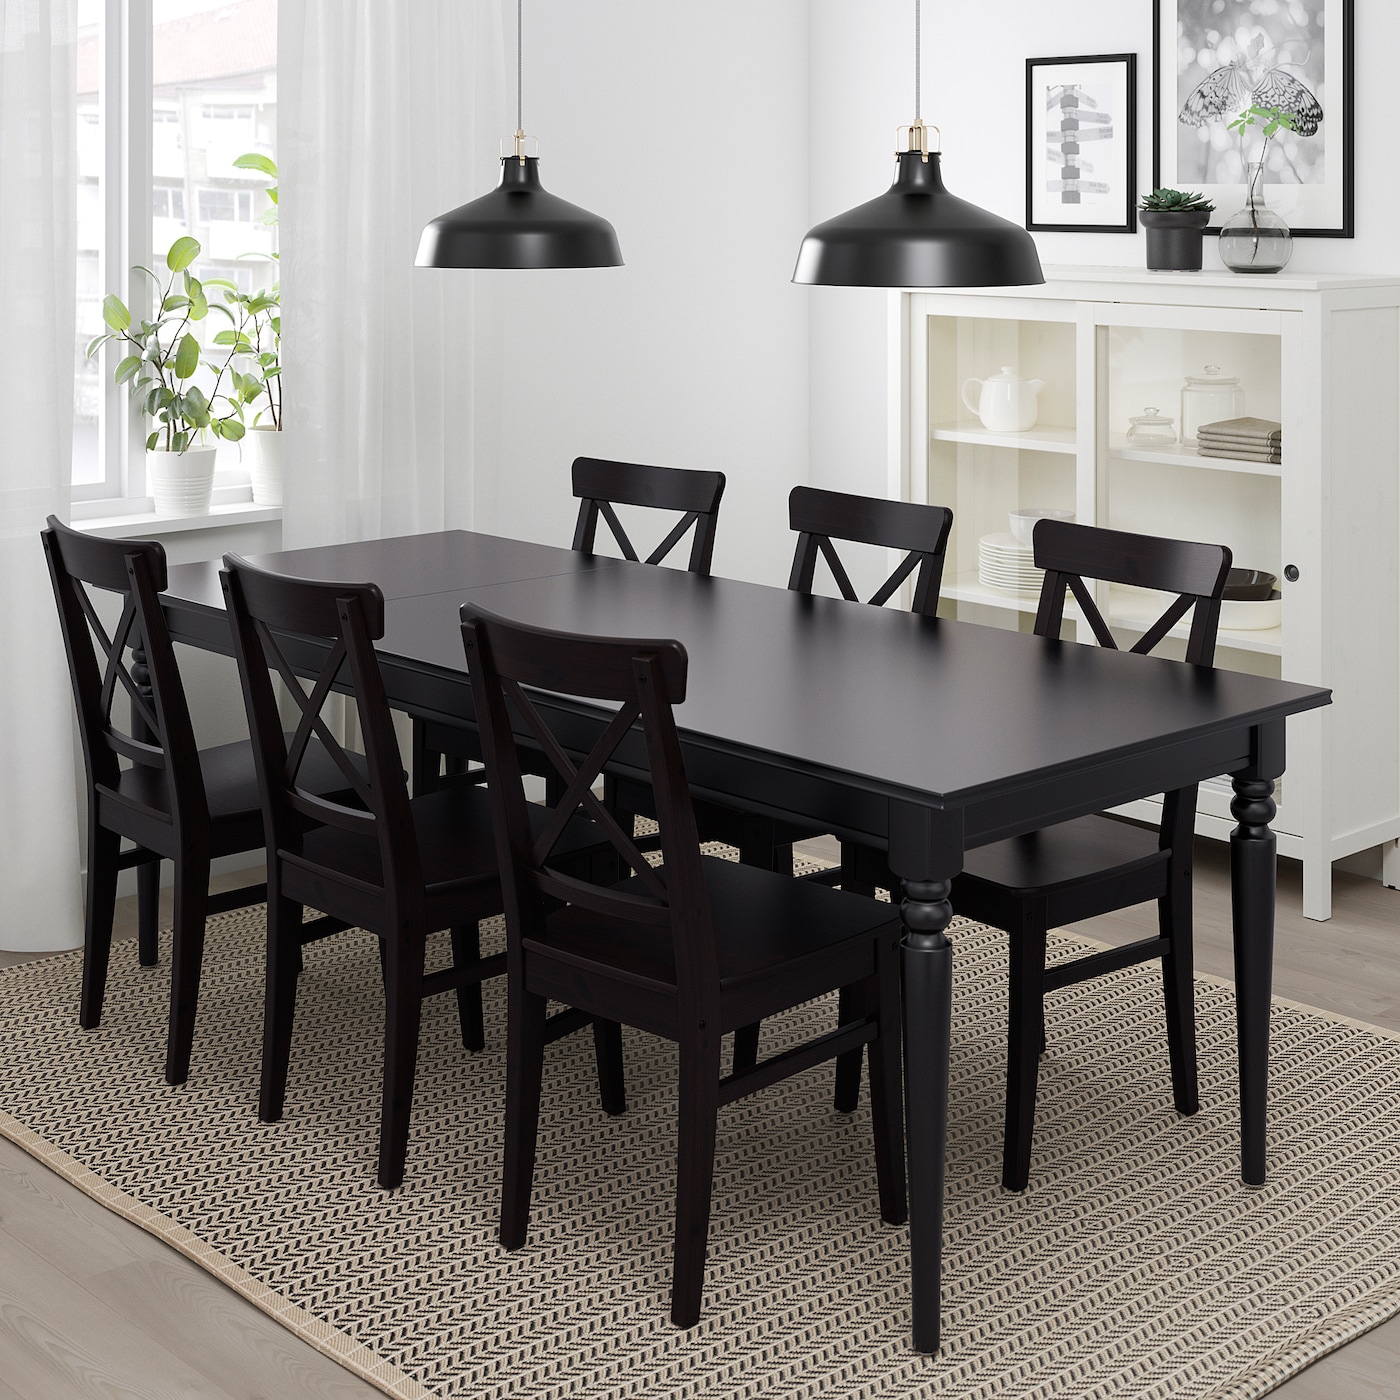 кухня с черным столом и стульями дизайн